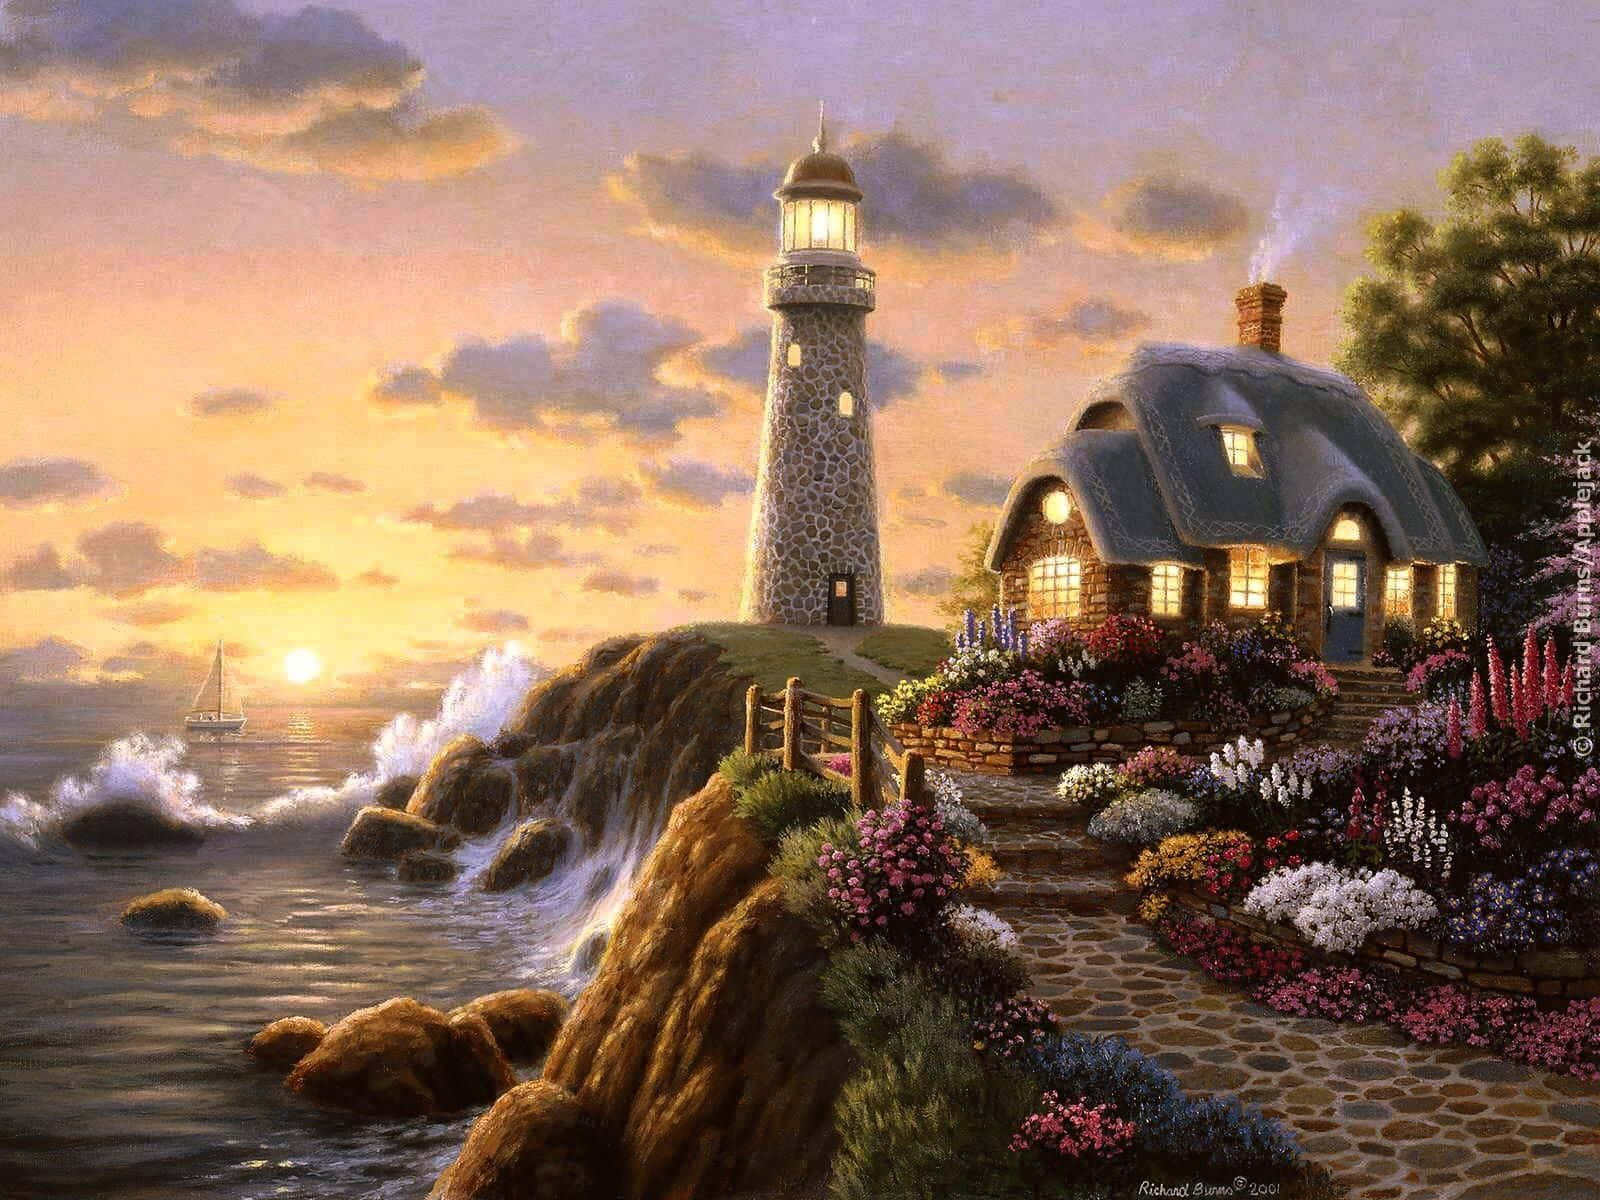 Image  "Idyllic Sunset Scene of A Lighthouse Overlooking The Ocean"